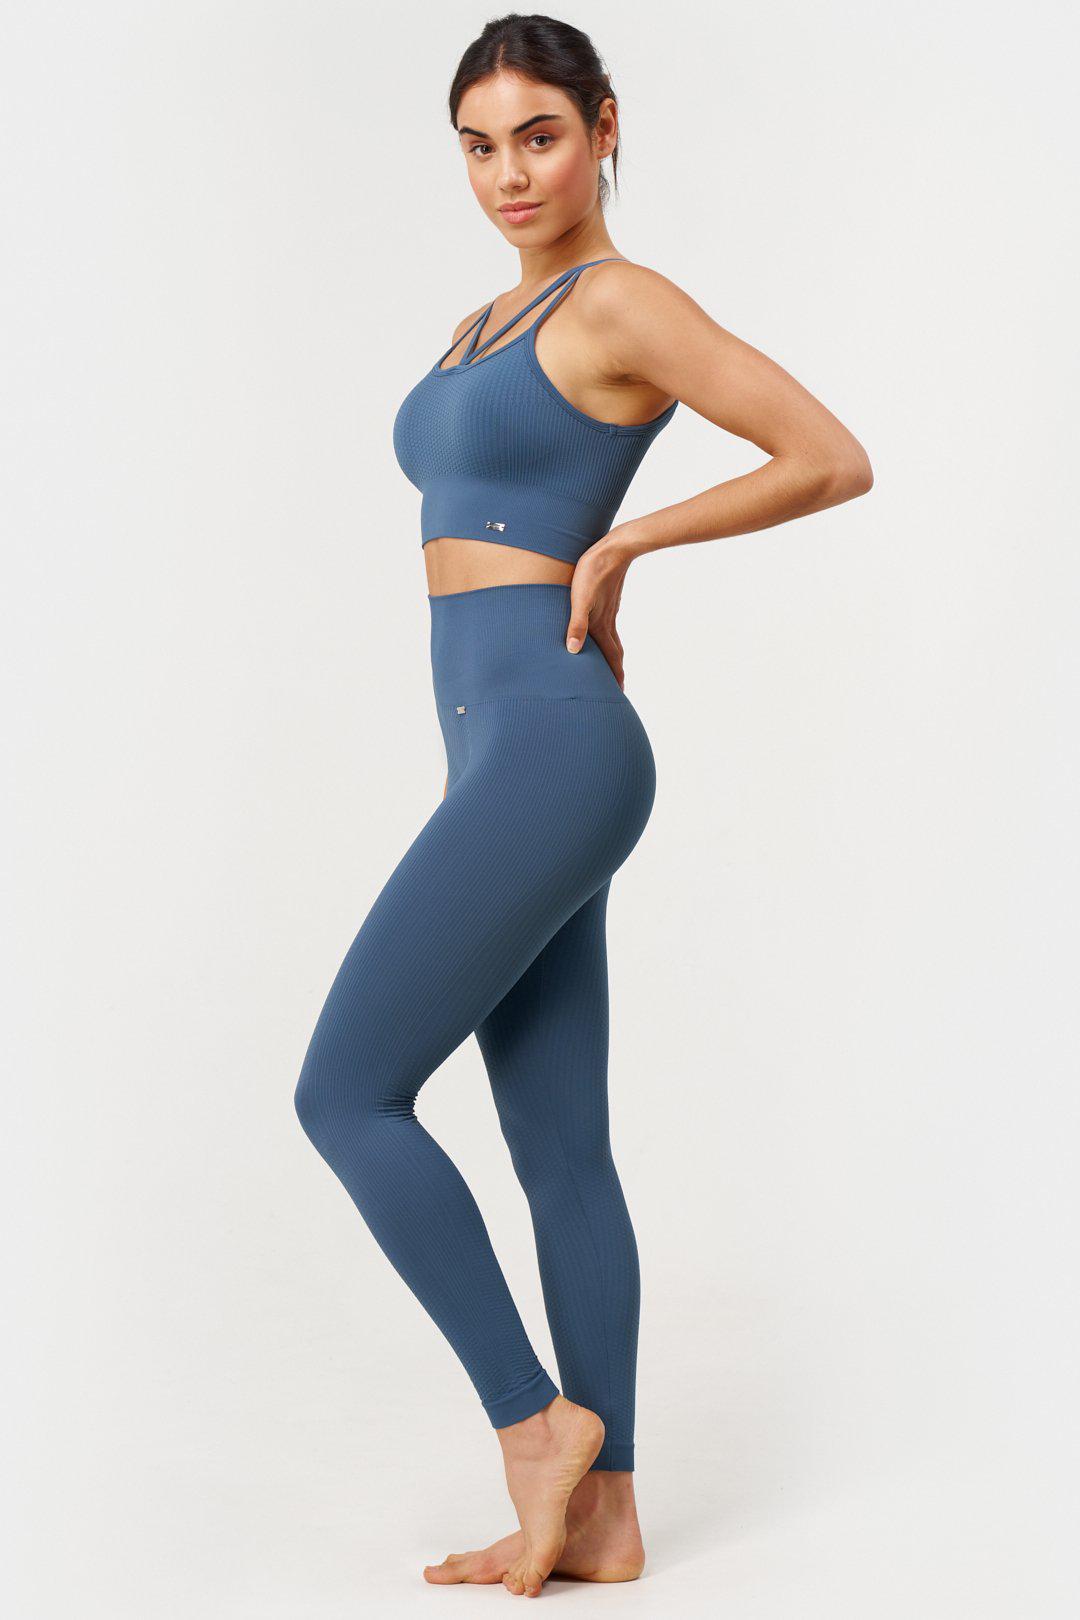 Feel Bra Reversible en Jade-Bras-Tienda Ropa Leggings Yoga Sostenibles Reciclados Mujer On-line Barcelona Believe Athletics Sustainable Recycled Yoga Clothes